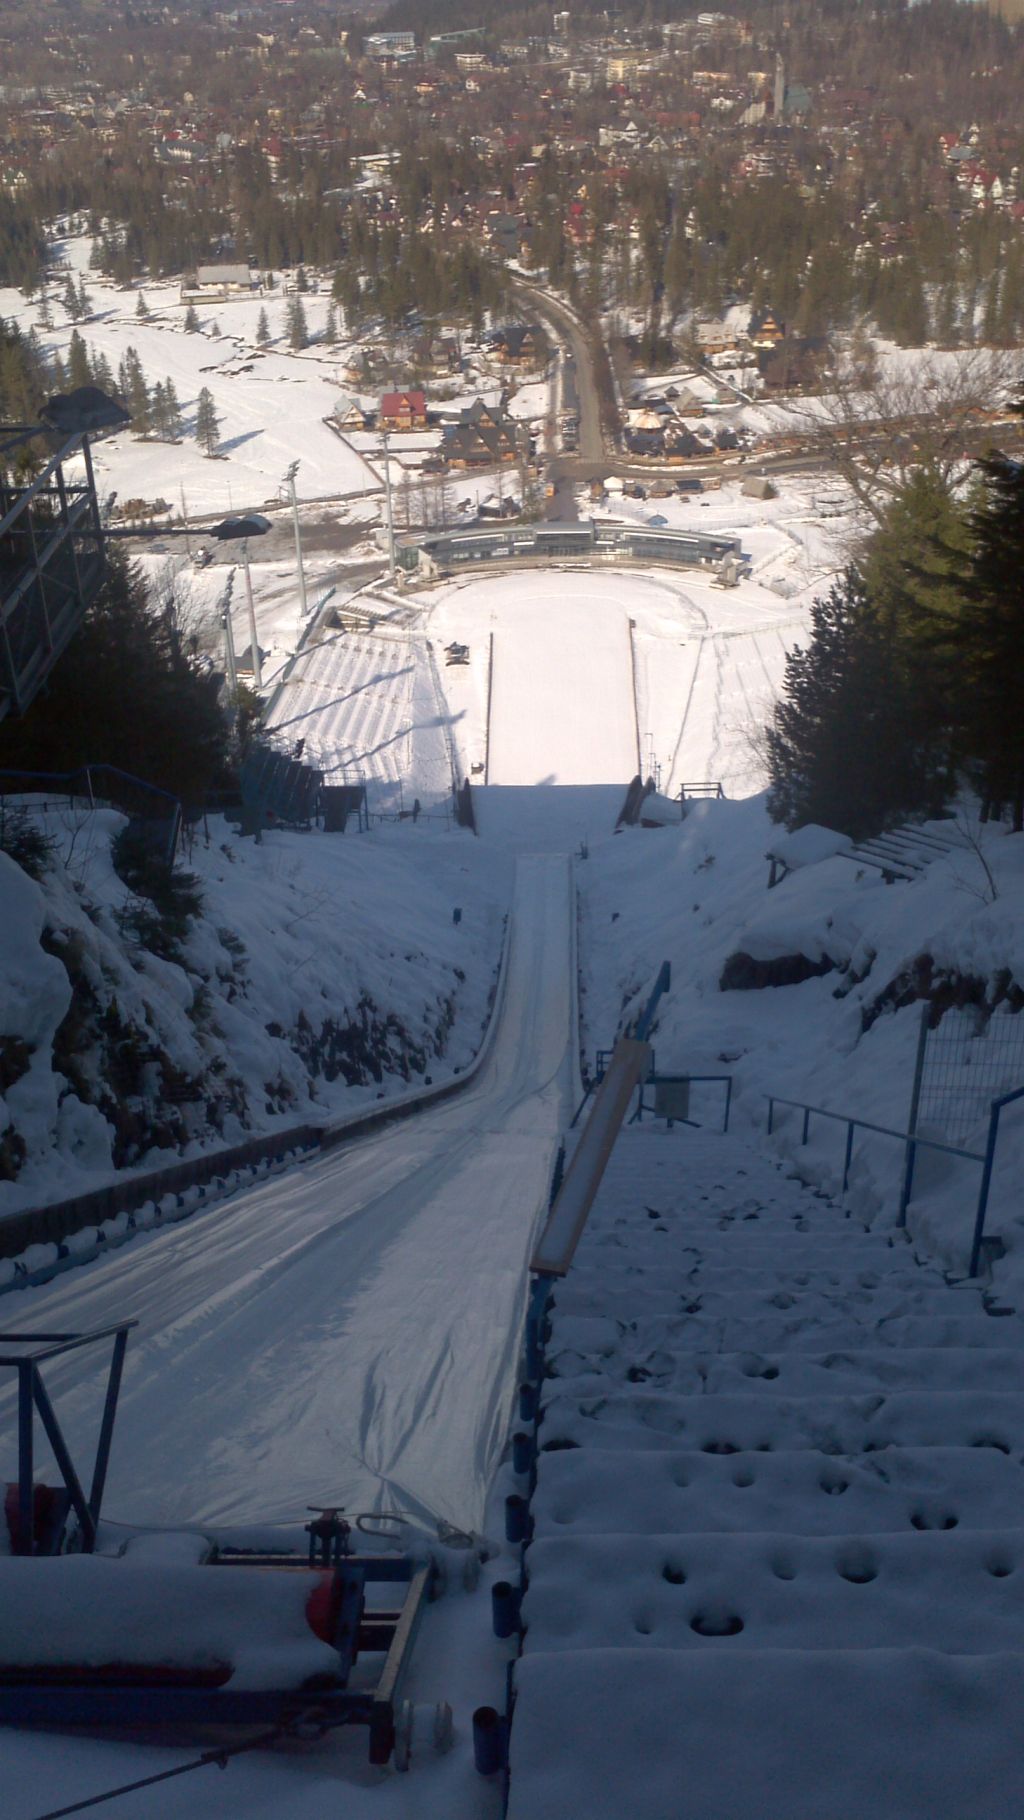 Skocznia narciarska w Zakopanem - Wielka Krokiew 2